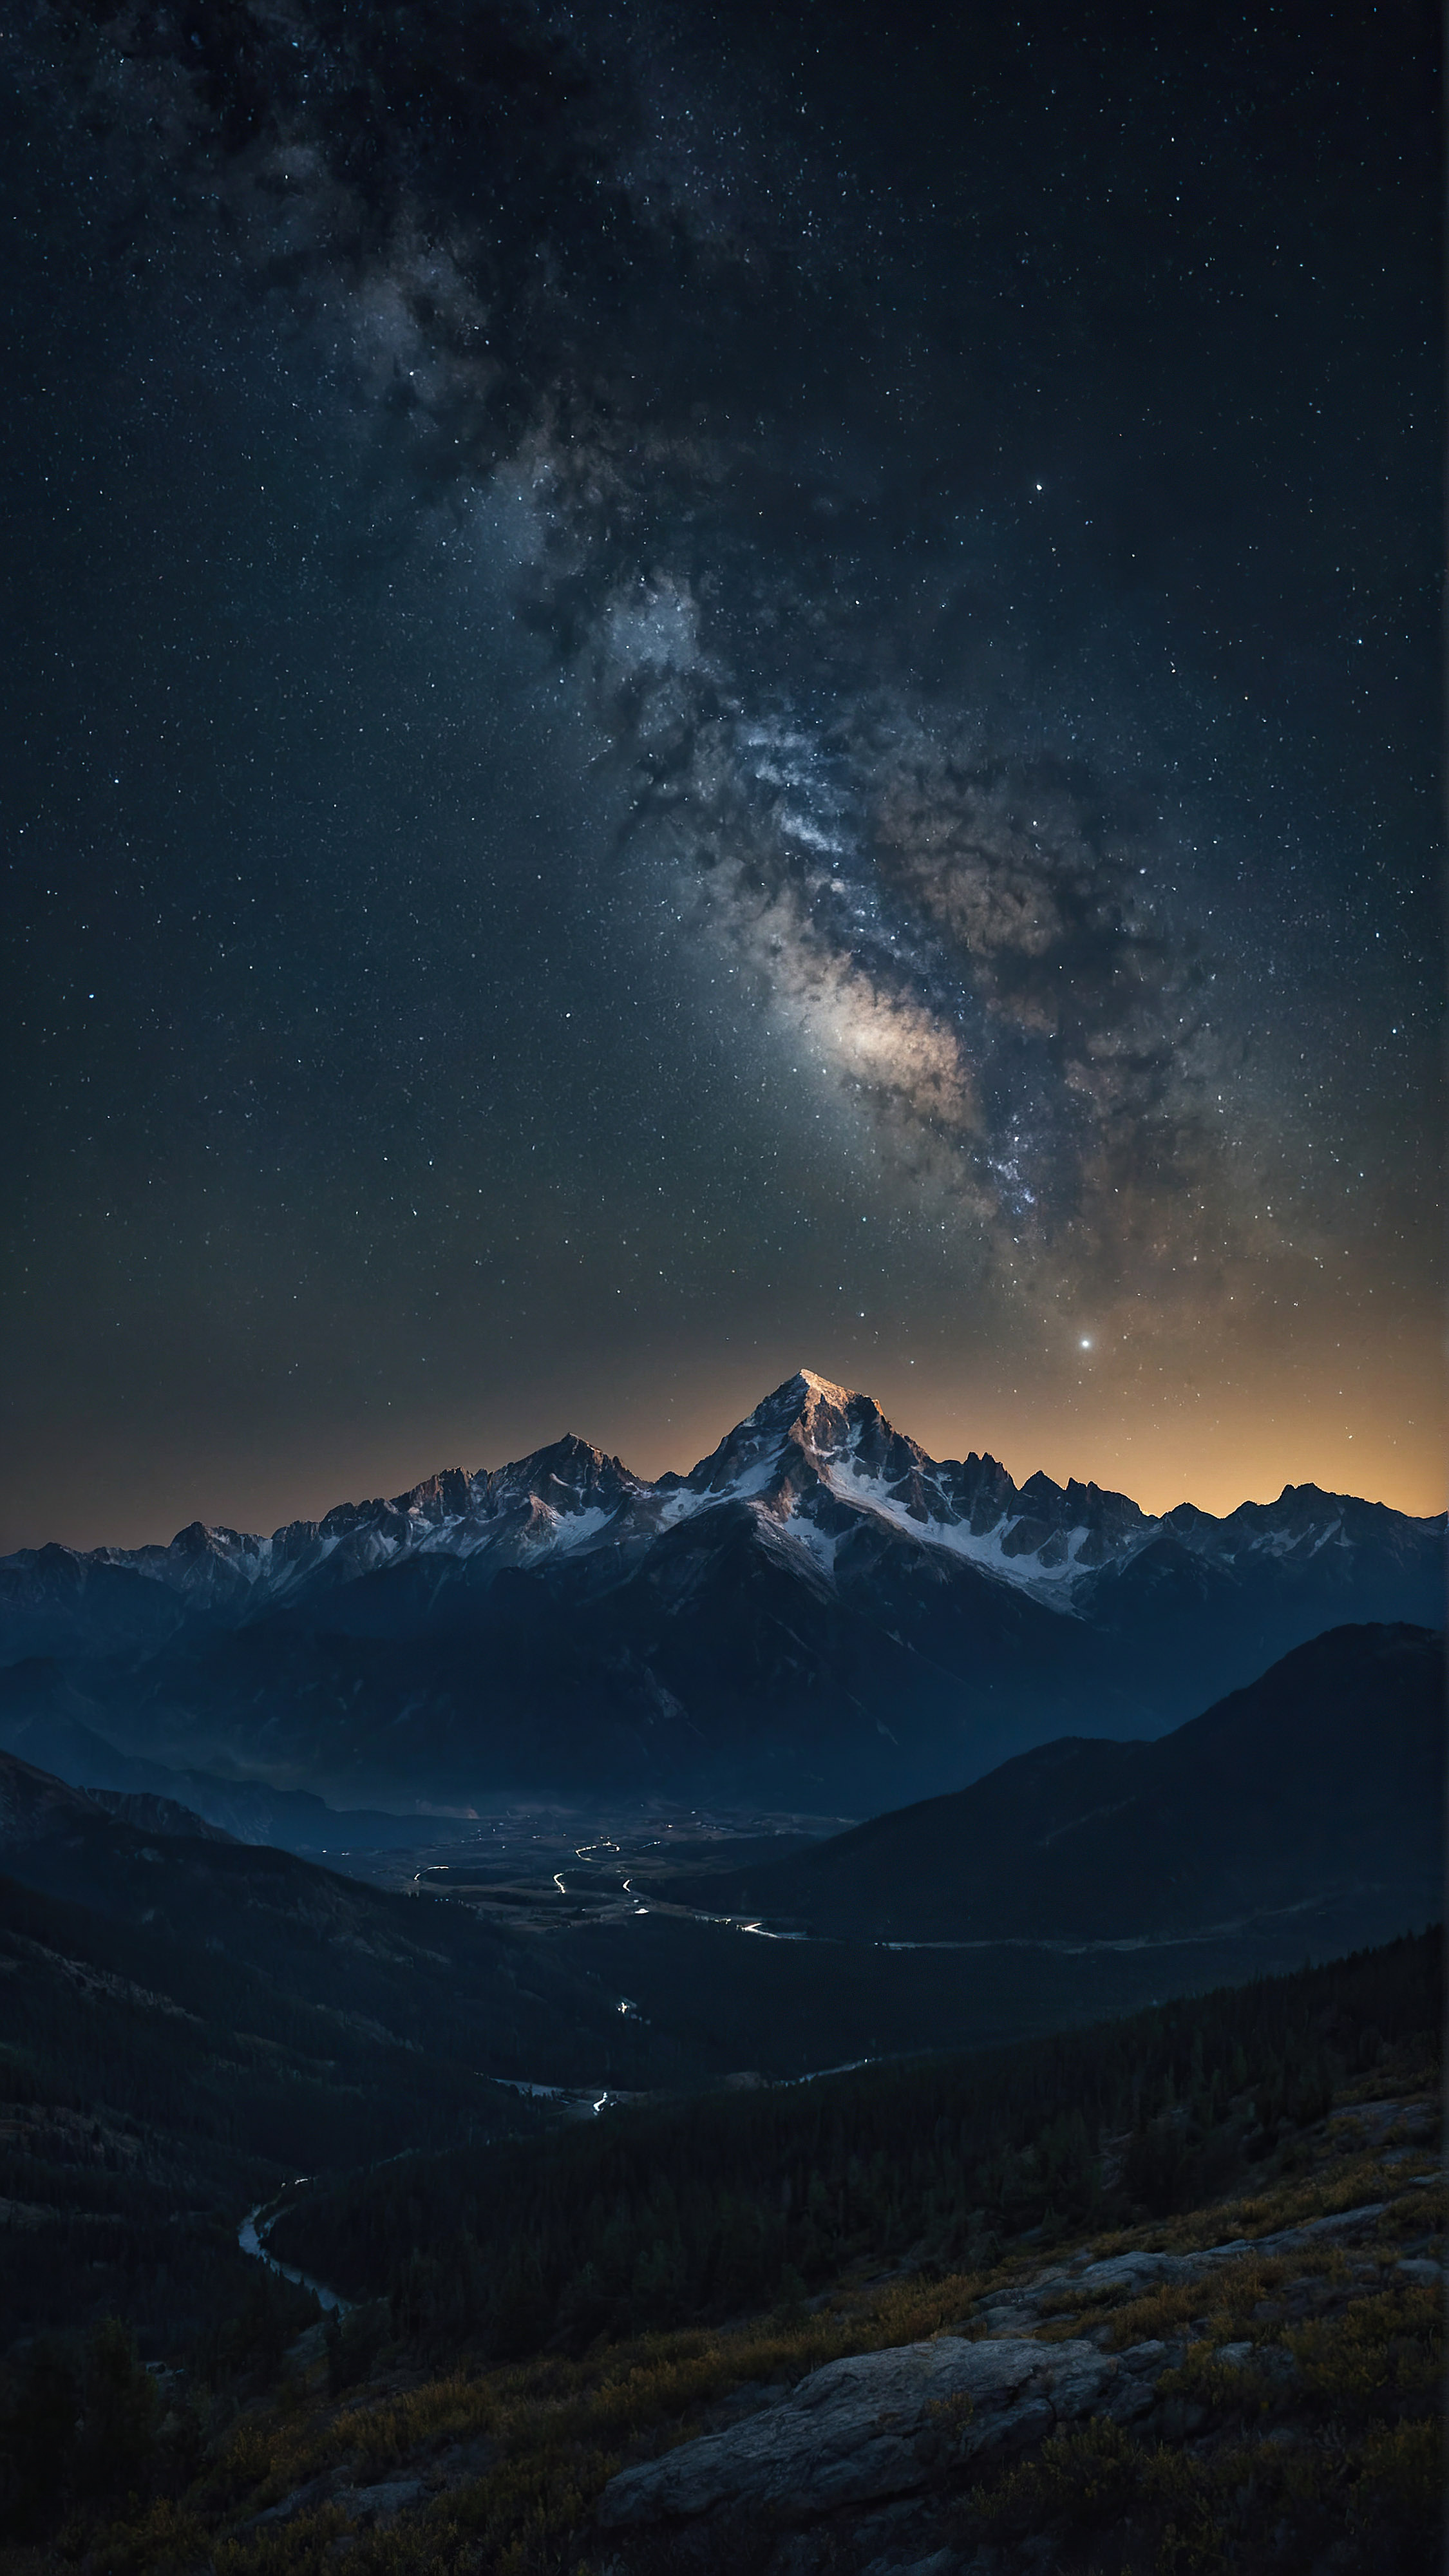 Téléchargez gratuitement ce beau fond d'écran pour iPhone en 4K, capturant une scène nocturne à couper le souffle d'une chaîne de montagnes accidentée sous un ciel étoilé, avec d'innombrables étoiles ajoutant à l'atmosphère sereine et majestueuse du paysage.